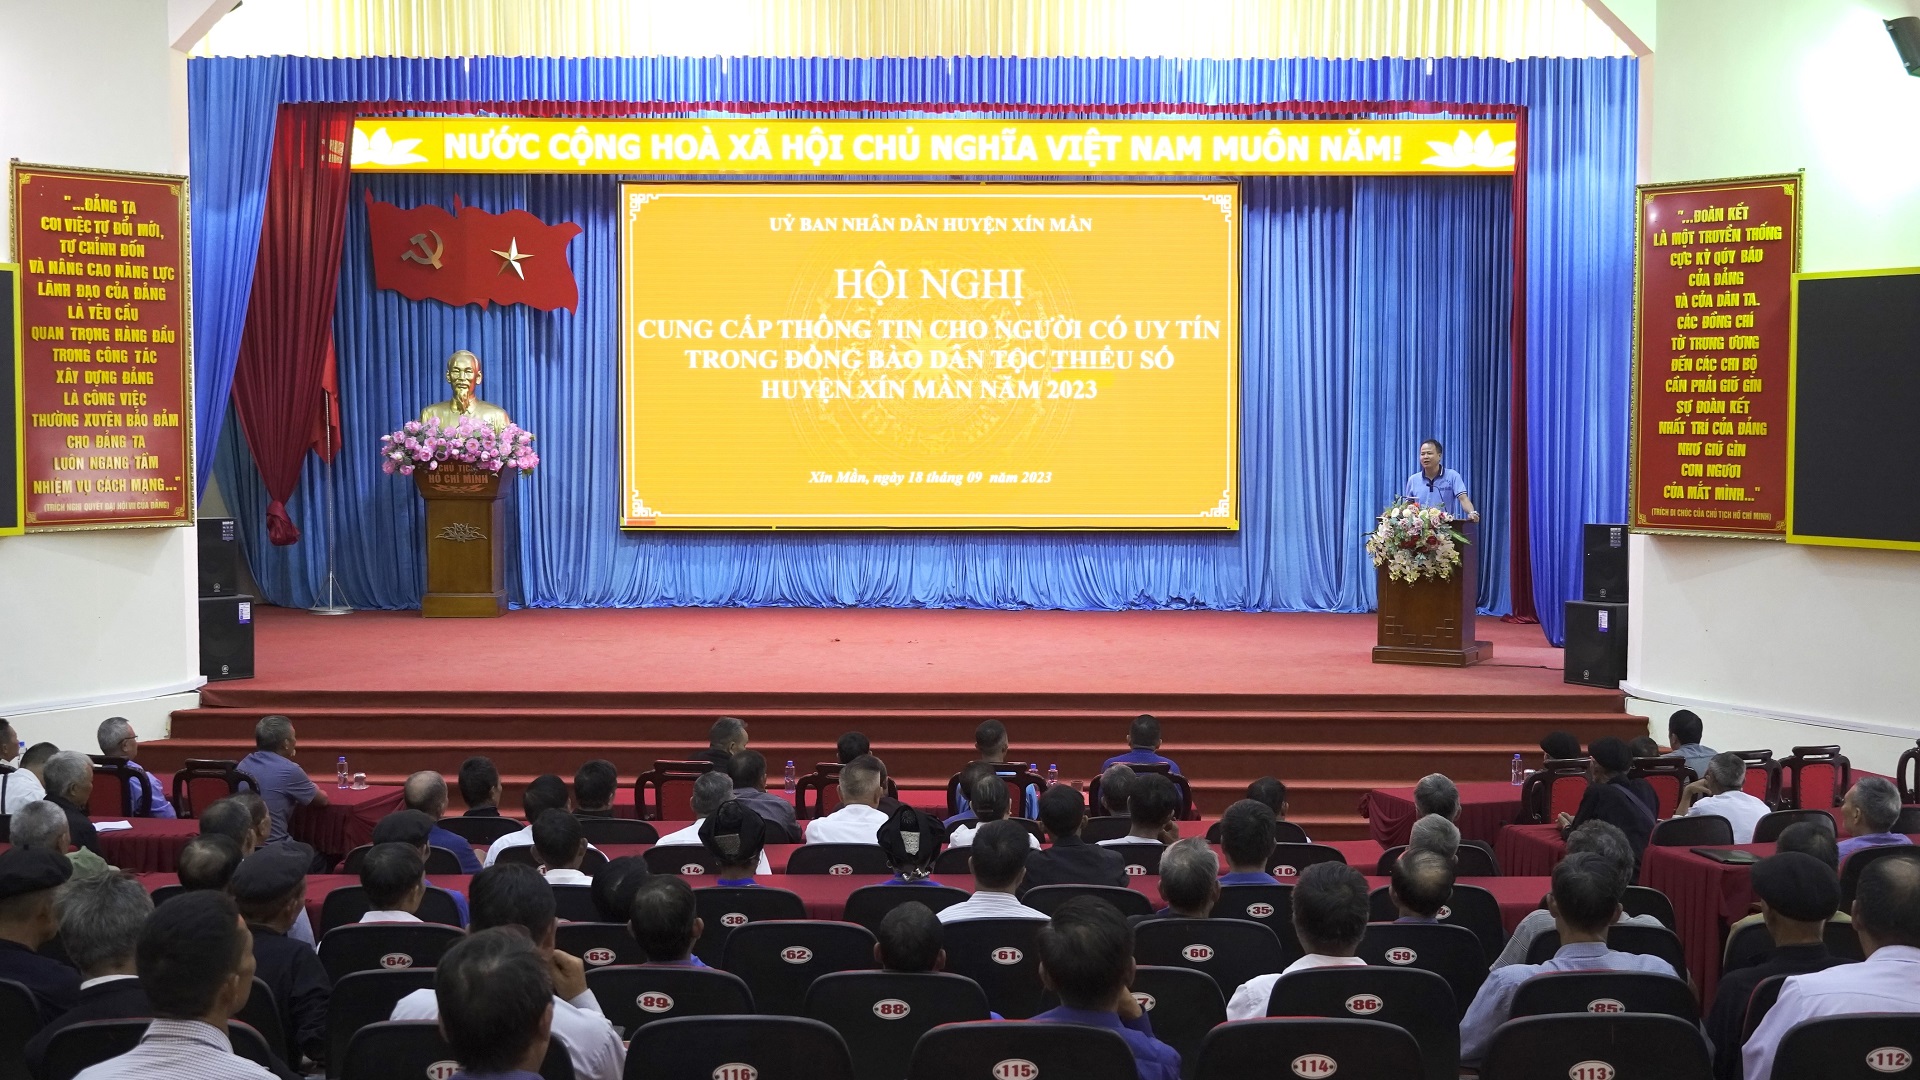 Hội nghị cung cấp thông tin cho người có uy tín trong đồng bào dân tộc thiểu số huyện Xín Mần năm 2023